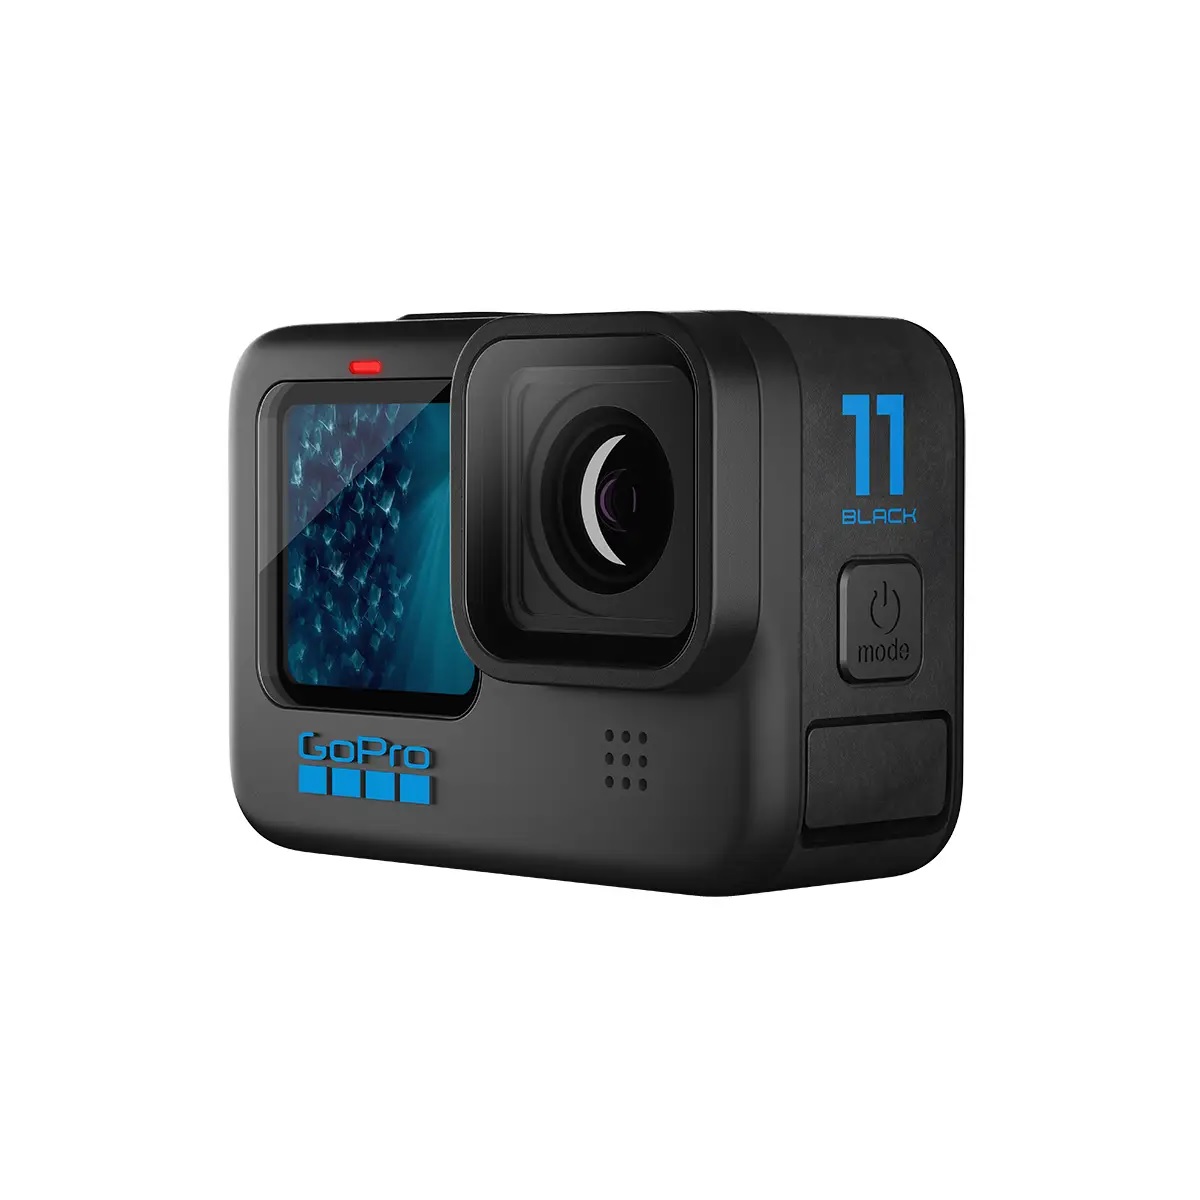 GoPro HERO11 BLACK Camera (BLACK), , large image number 1